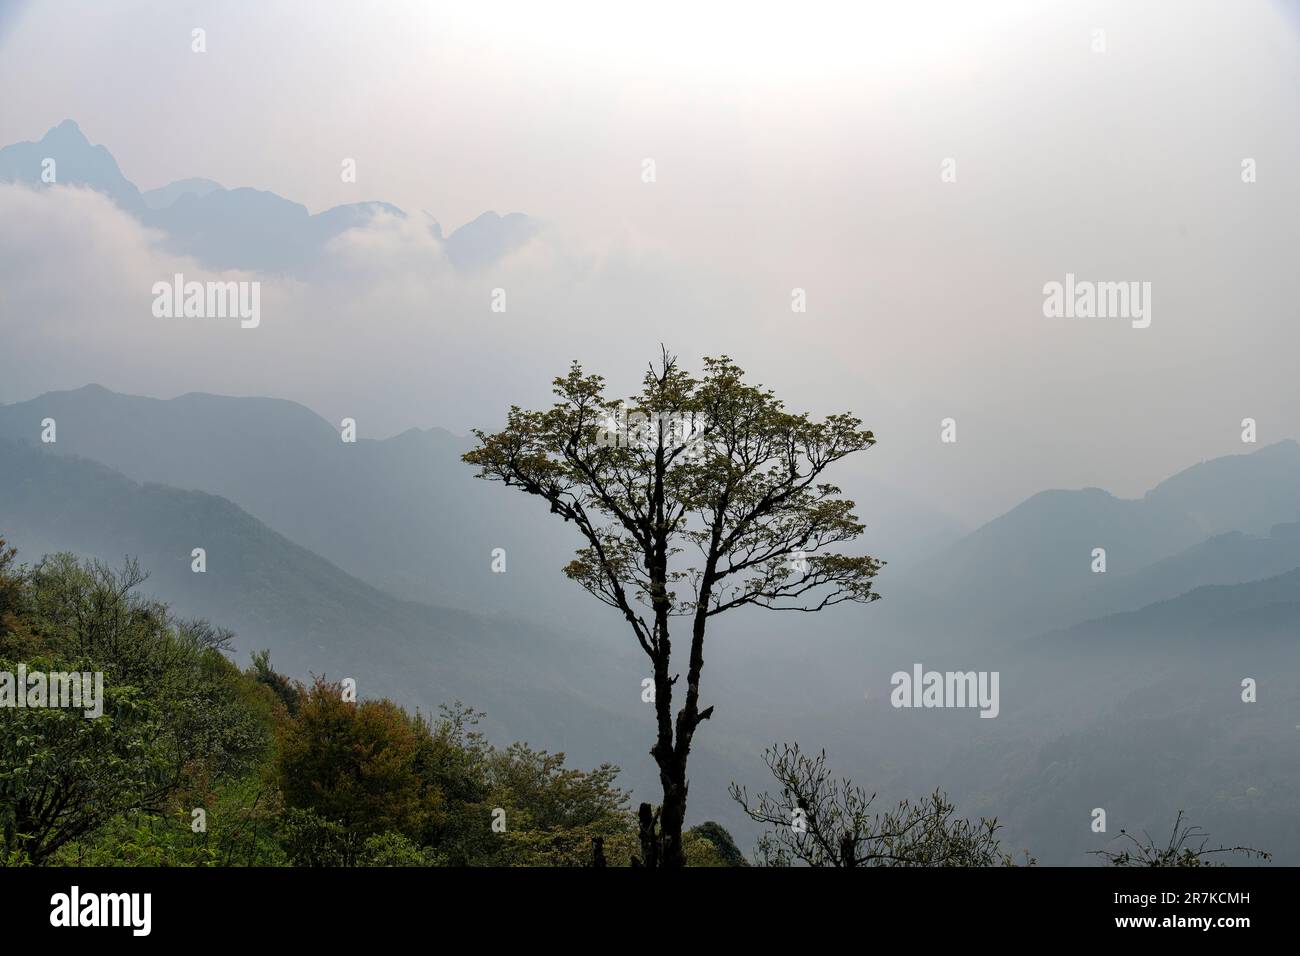 Vista panorámica con vistas a las montañas nubladas y brumosas en silueta a gran altitud desde la Puerta del Cielo de Sapa, Vietnam con un árbol solitario en silueta Foto de stock